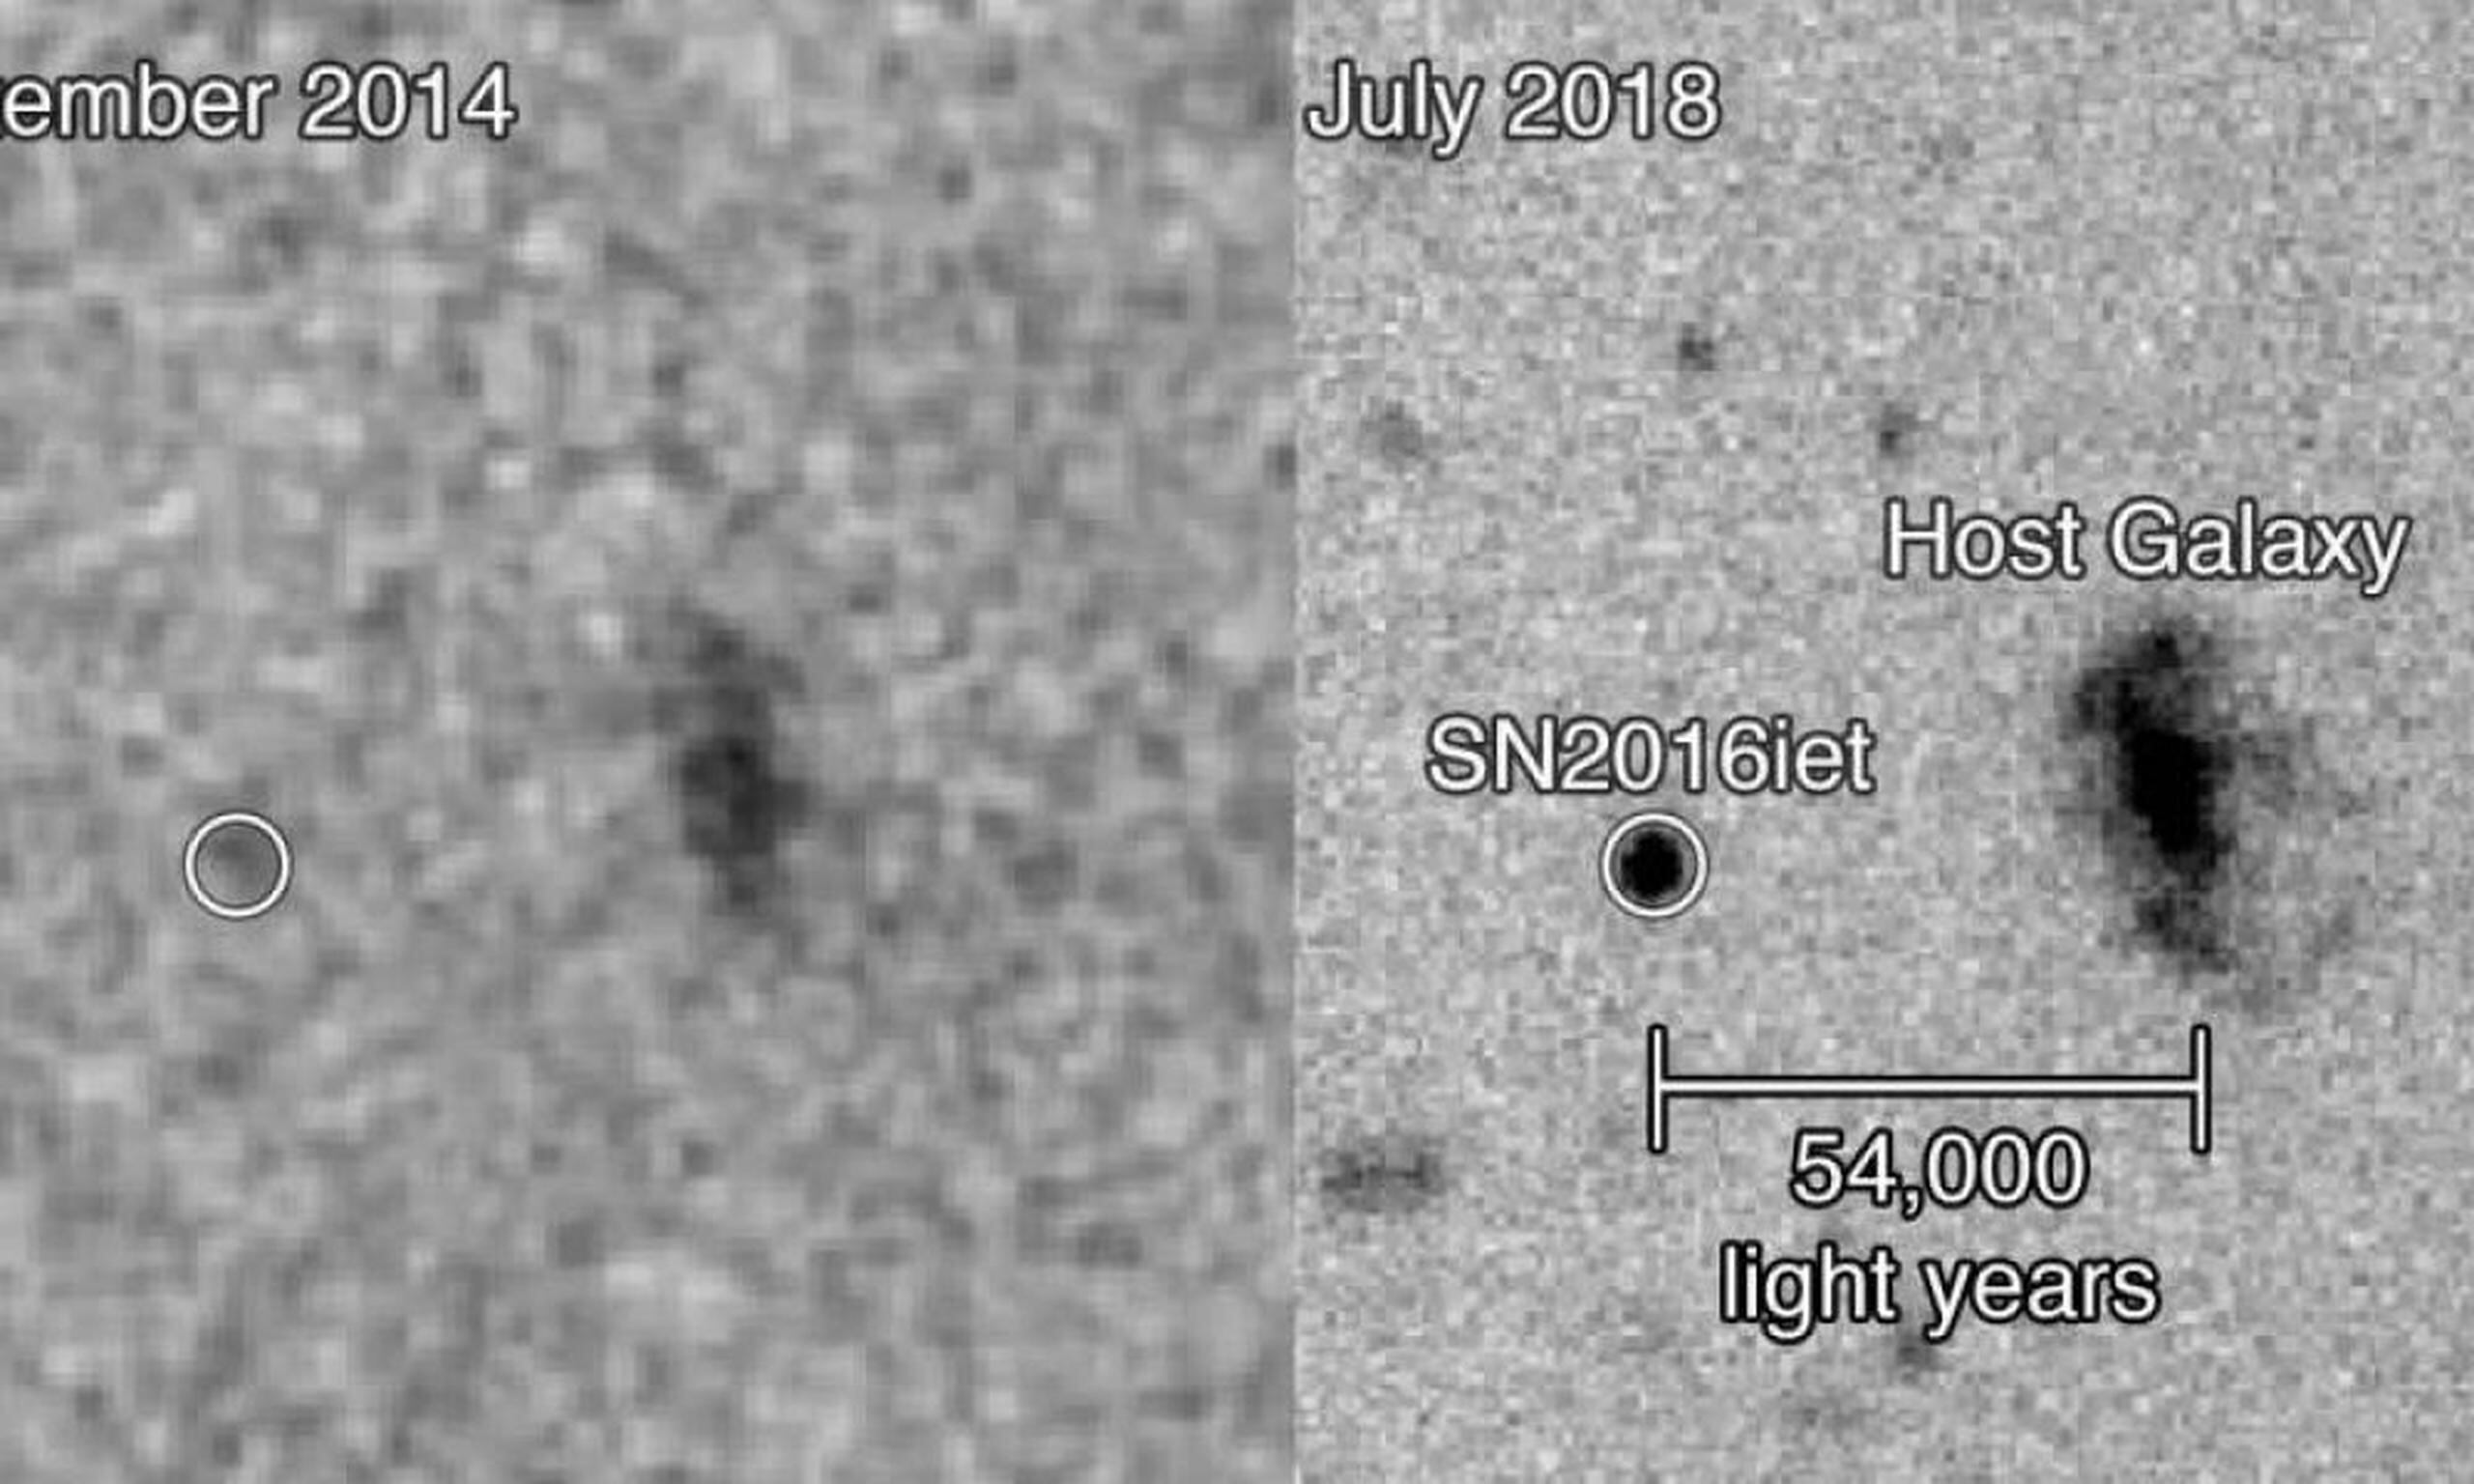 Imagen de SN 2016iet y su galaxia anfitriona. (Observatorio GEMINI / GDA)